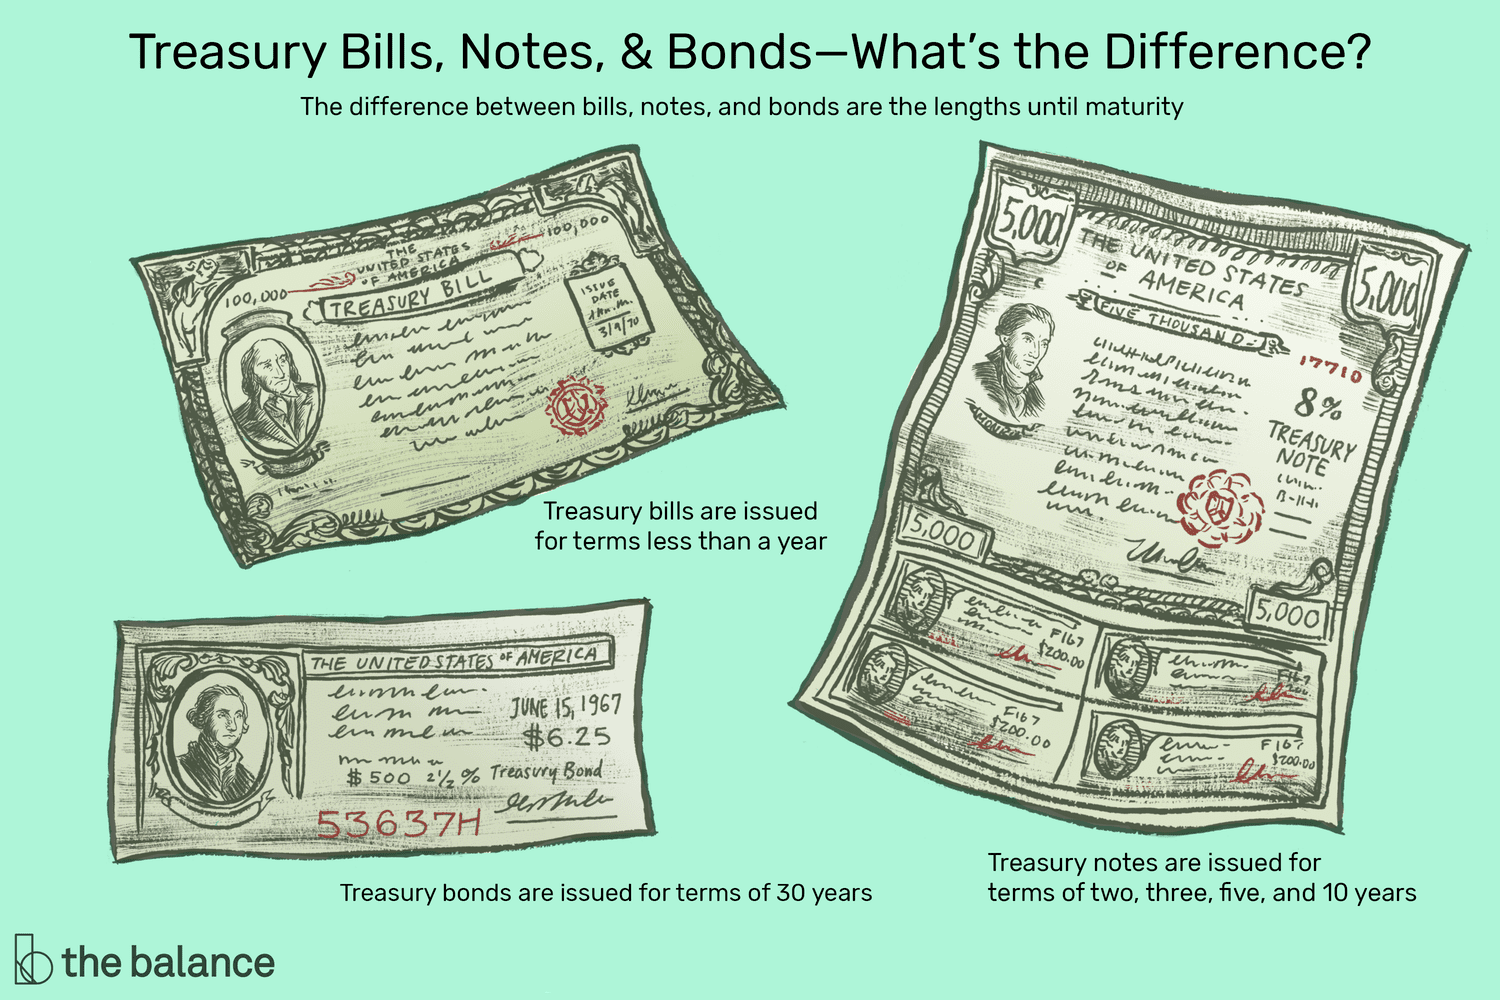 说明短期国库券、短期国库券和短期国库券的插图，并说明它们的区别